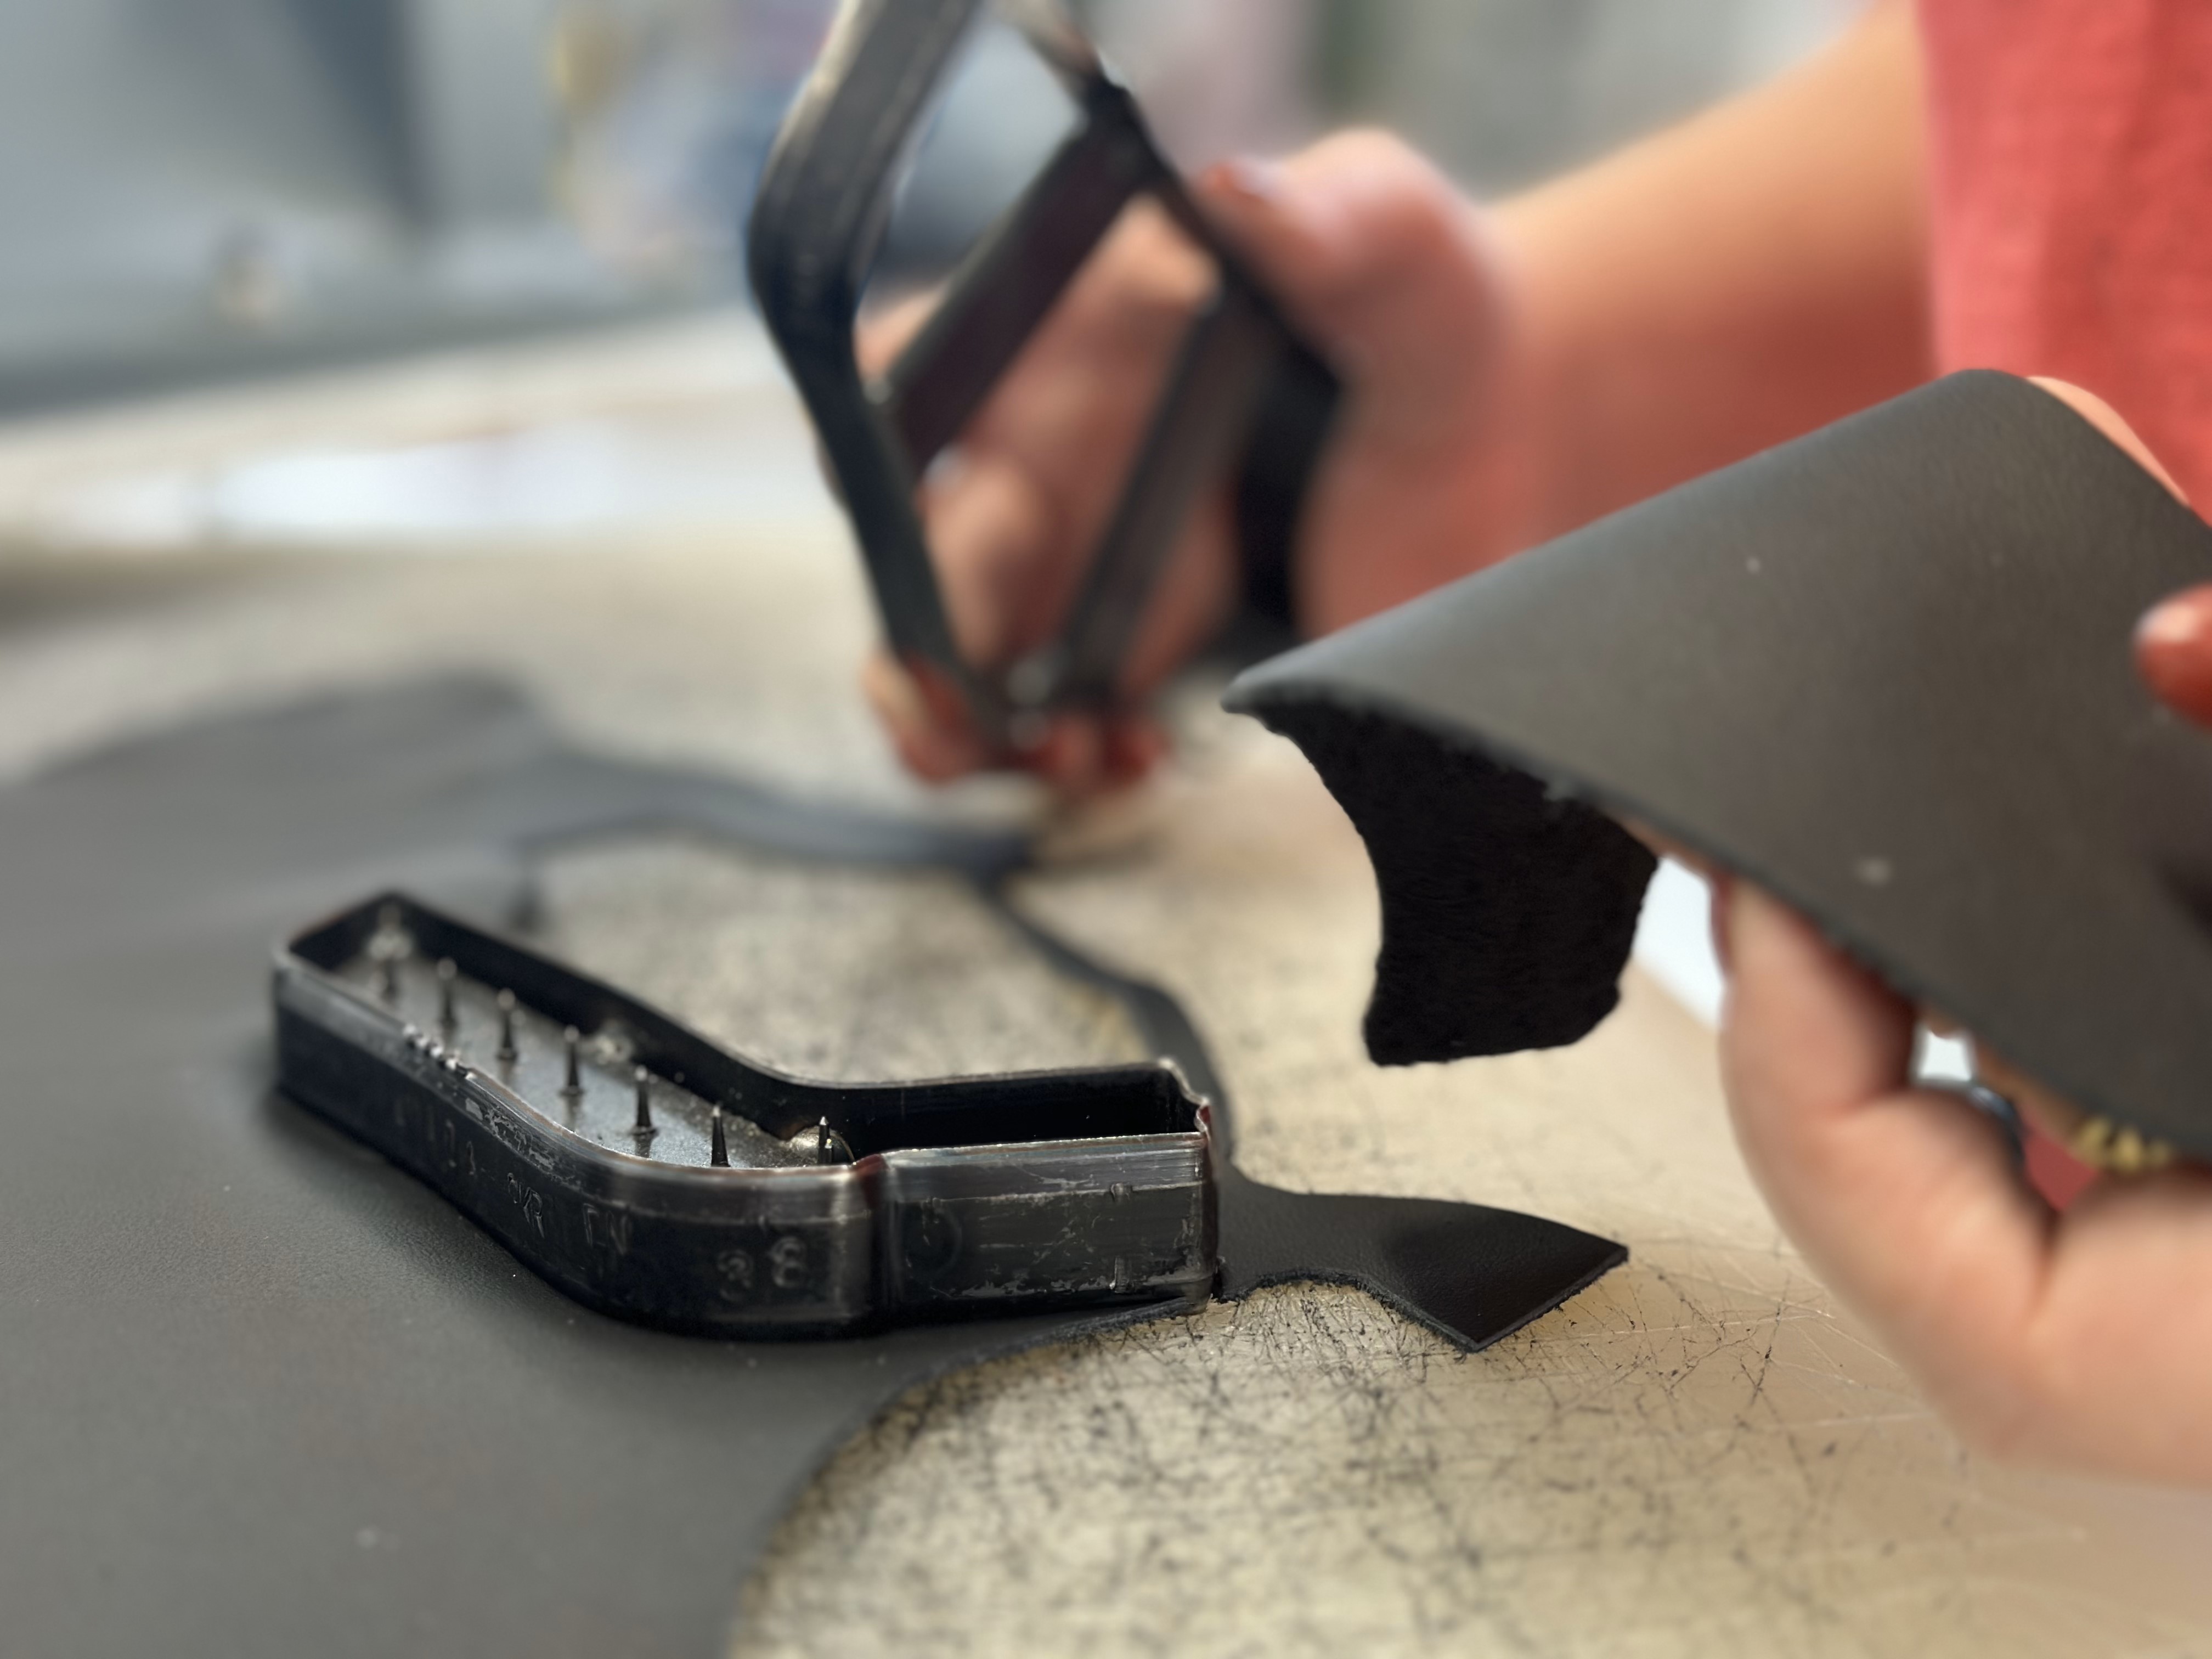 Náhled do řemesla: Vysekávání a příprava kůže při výrobě obuvi